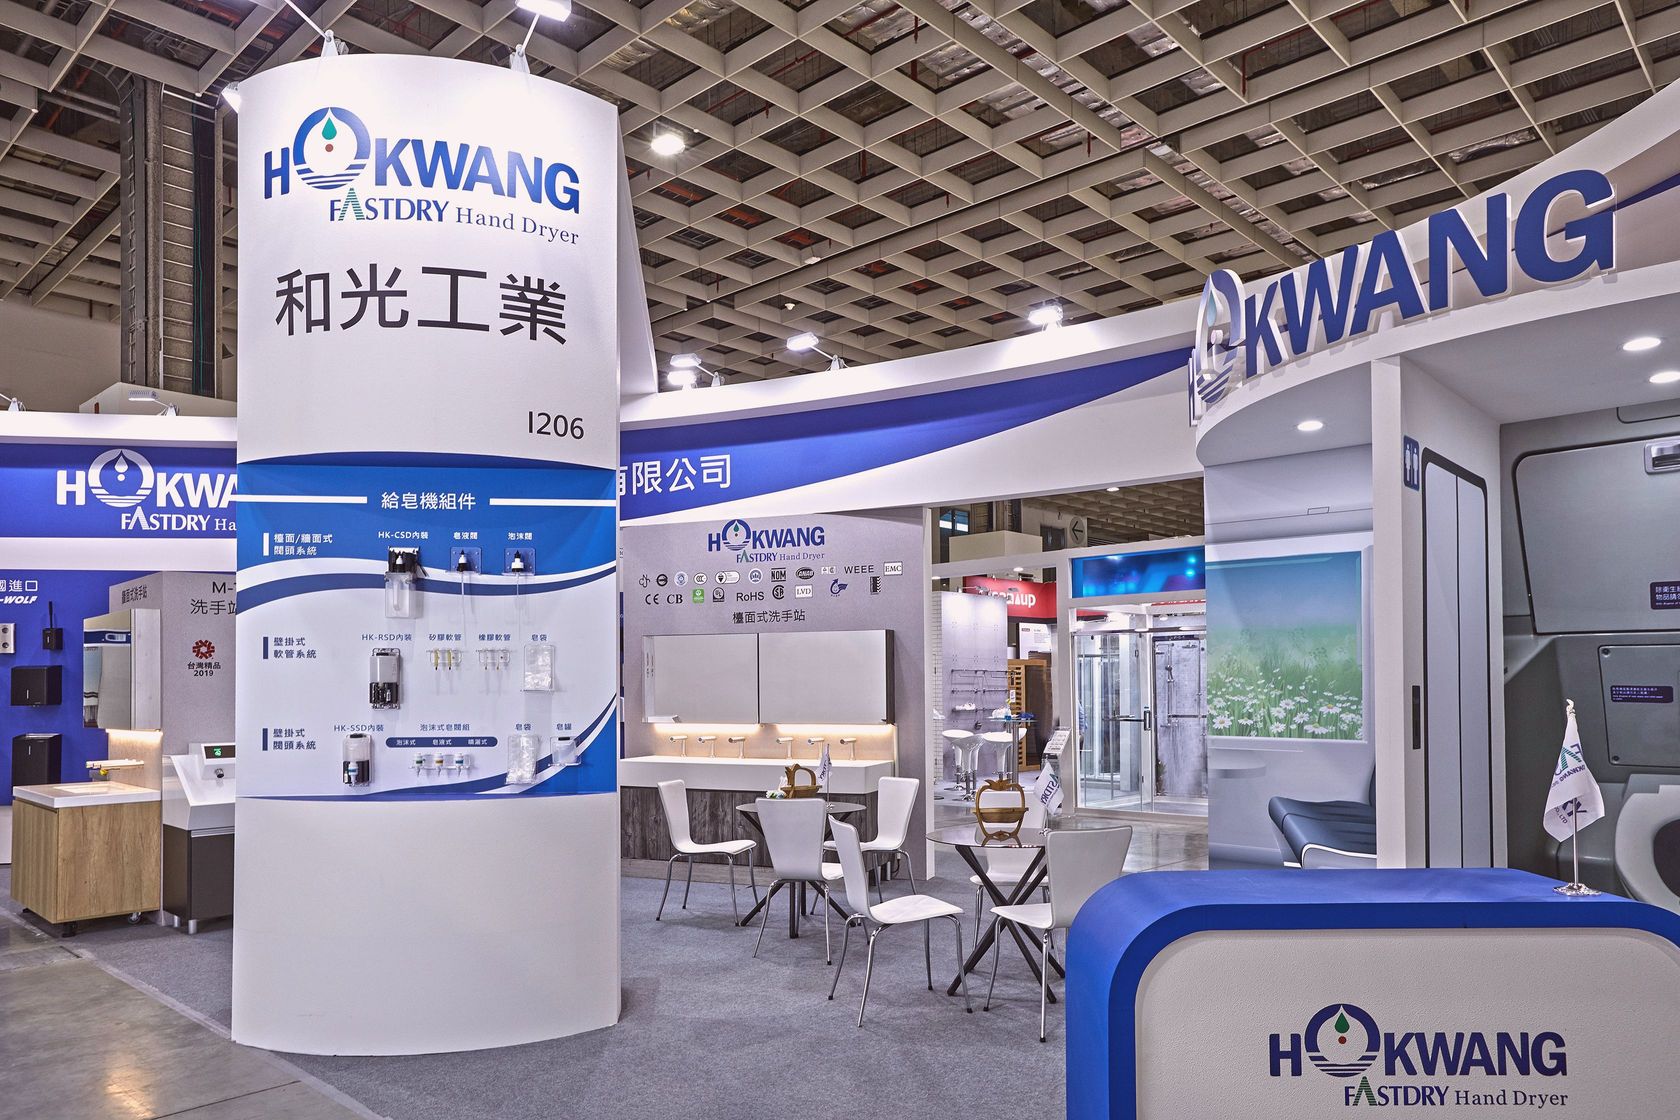 Hokwang tasarımı Taipei Building Show 2019'da